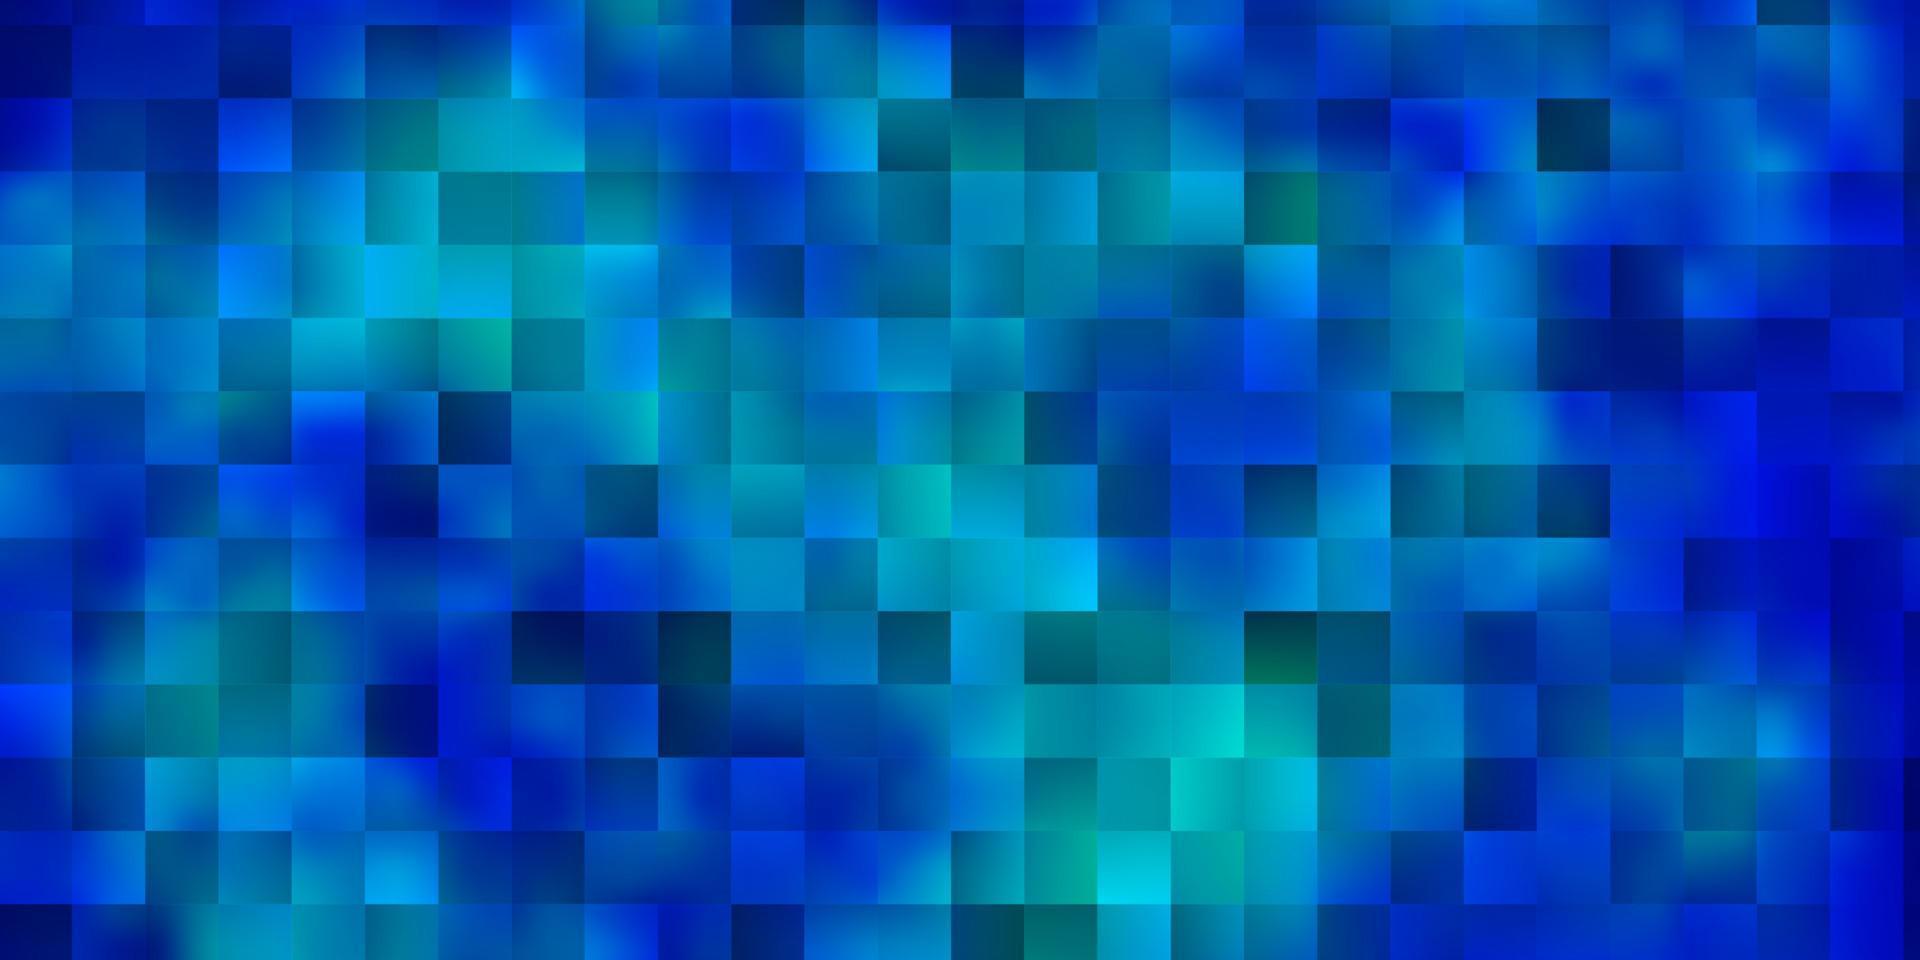 fundo azul claro do vetor no estilo poligonal.